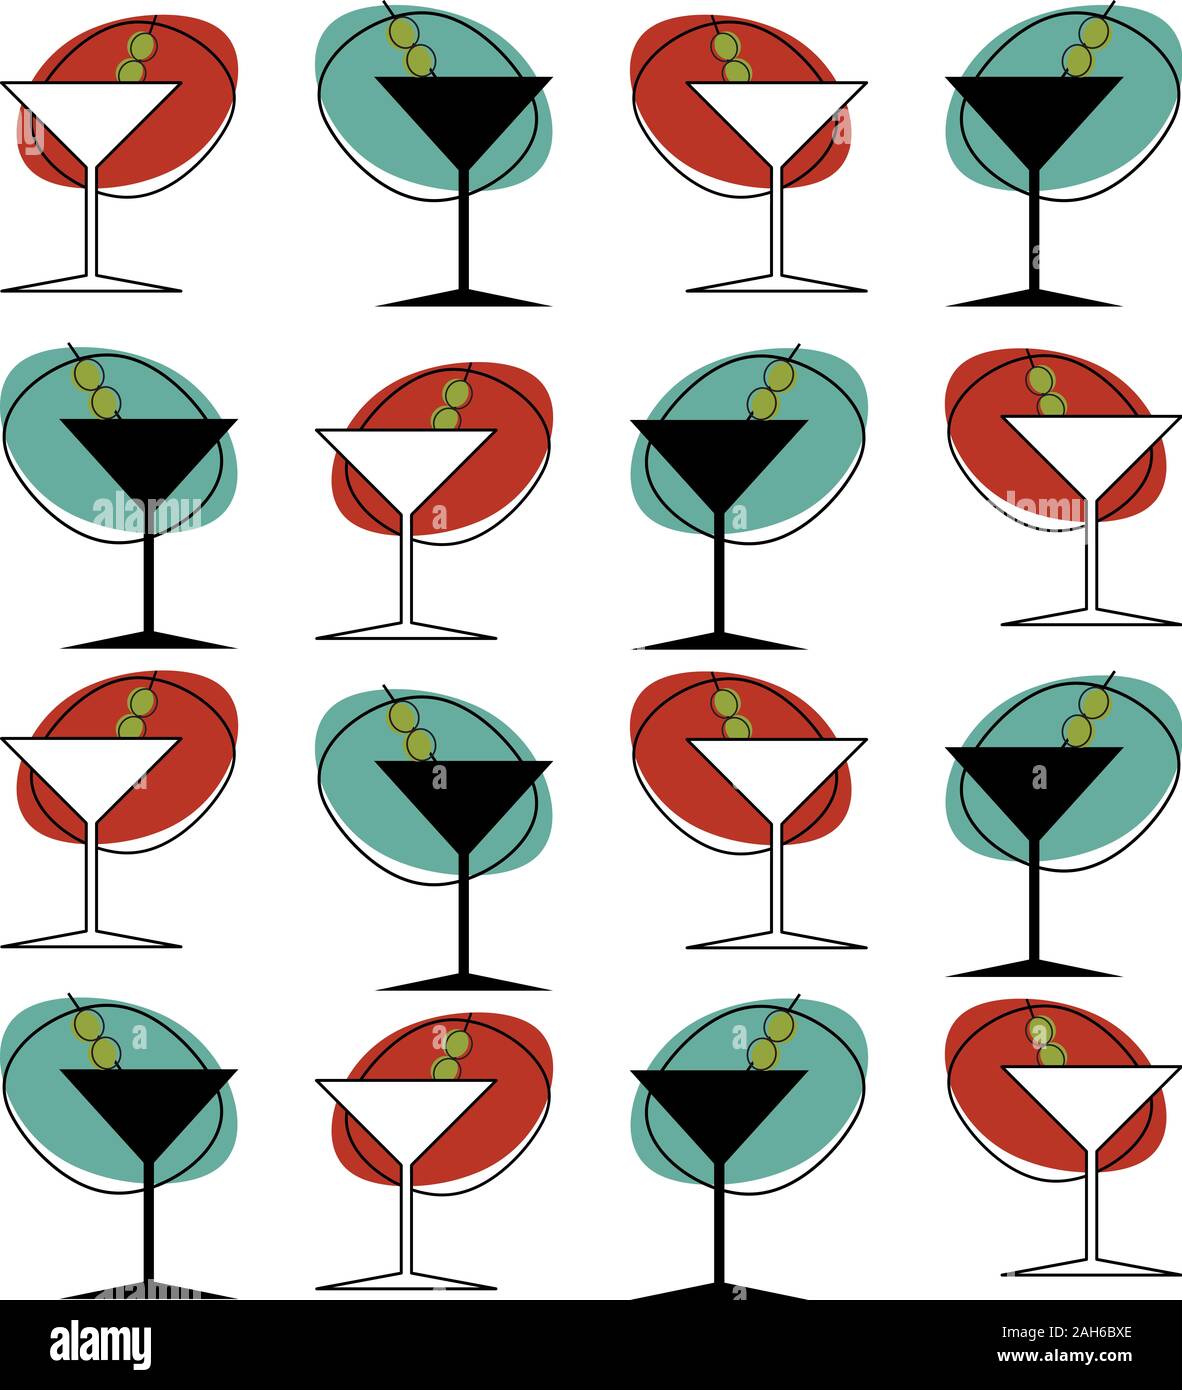 Un style années 50, verre à martini à motif répétitif Banque D'Images